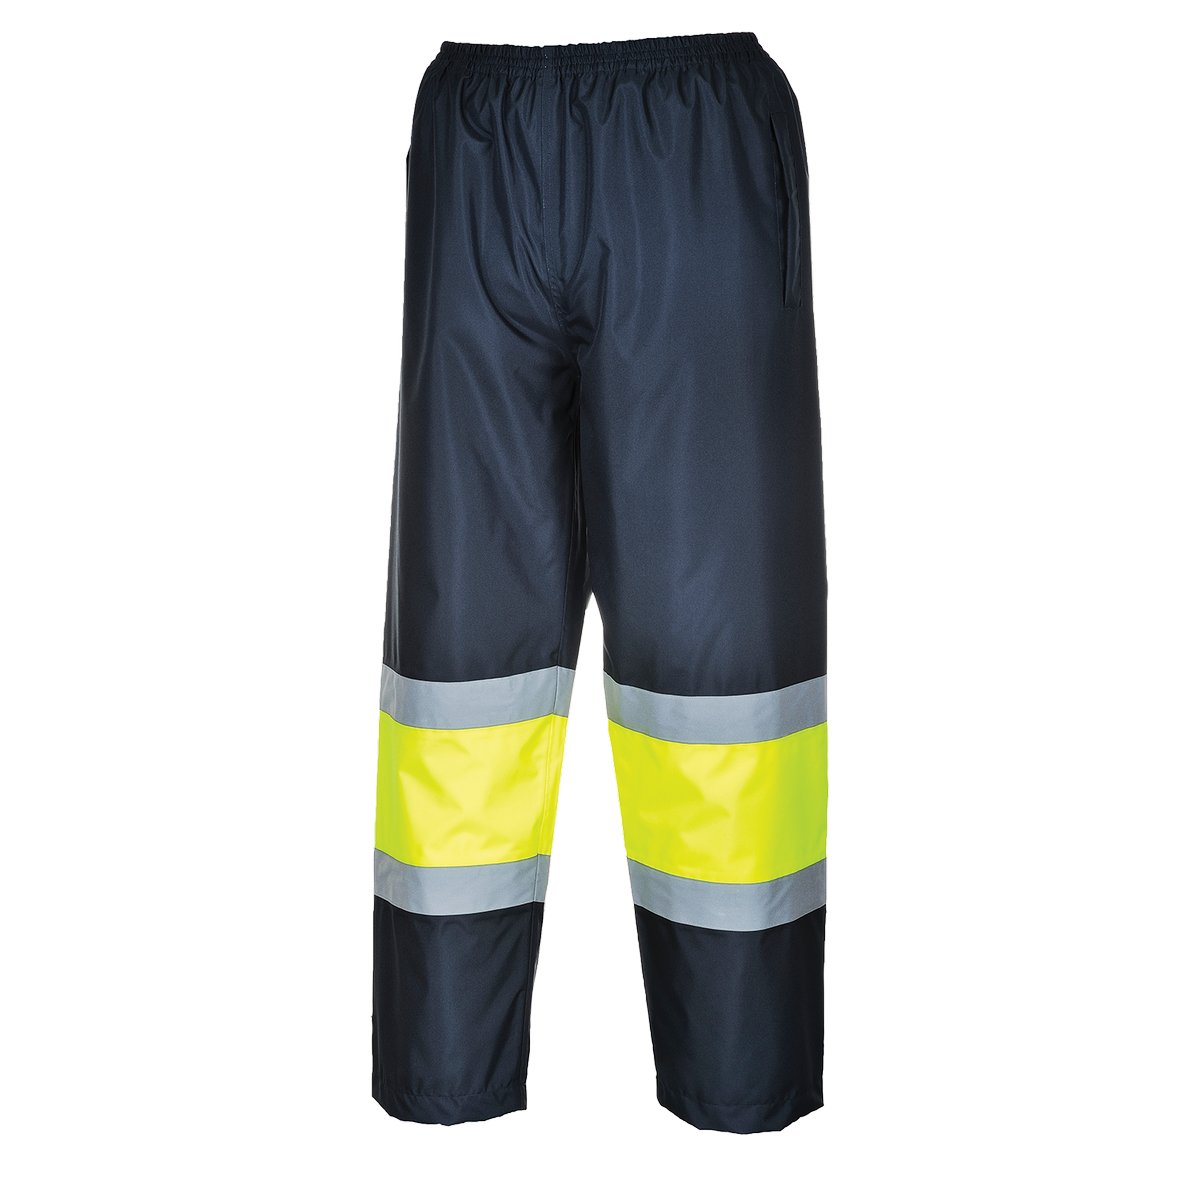 Pantaloni Taffic bicolor ad alta visibilità